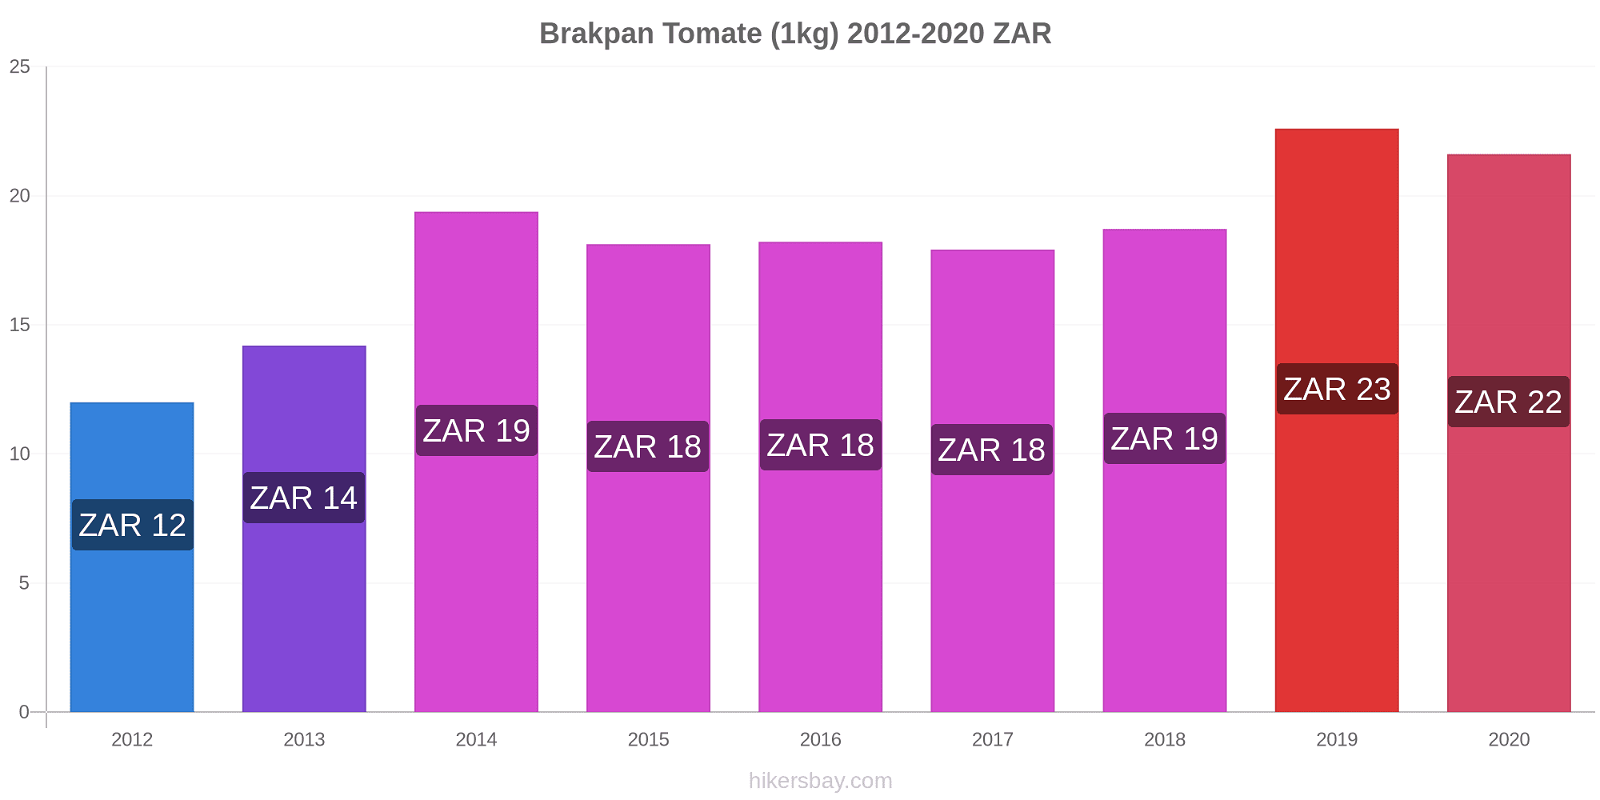 Brakpan changements de prix Tomate (1kg) hikersbay.com